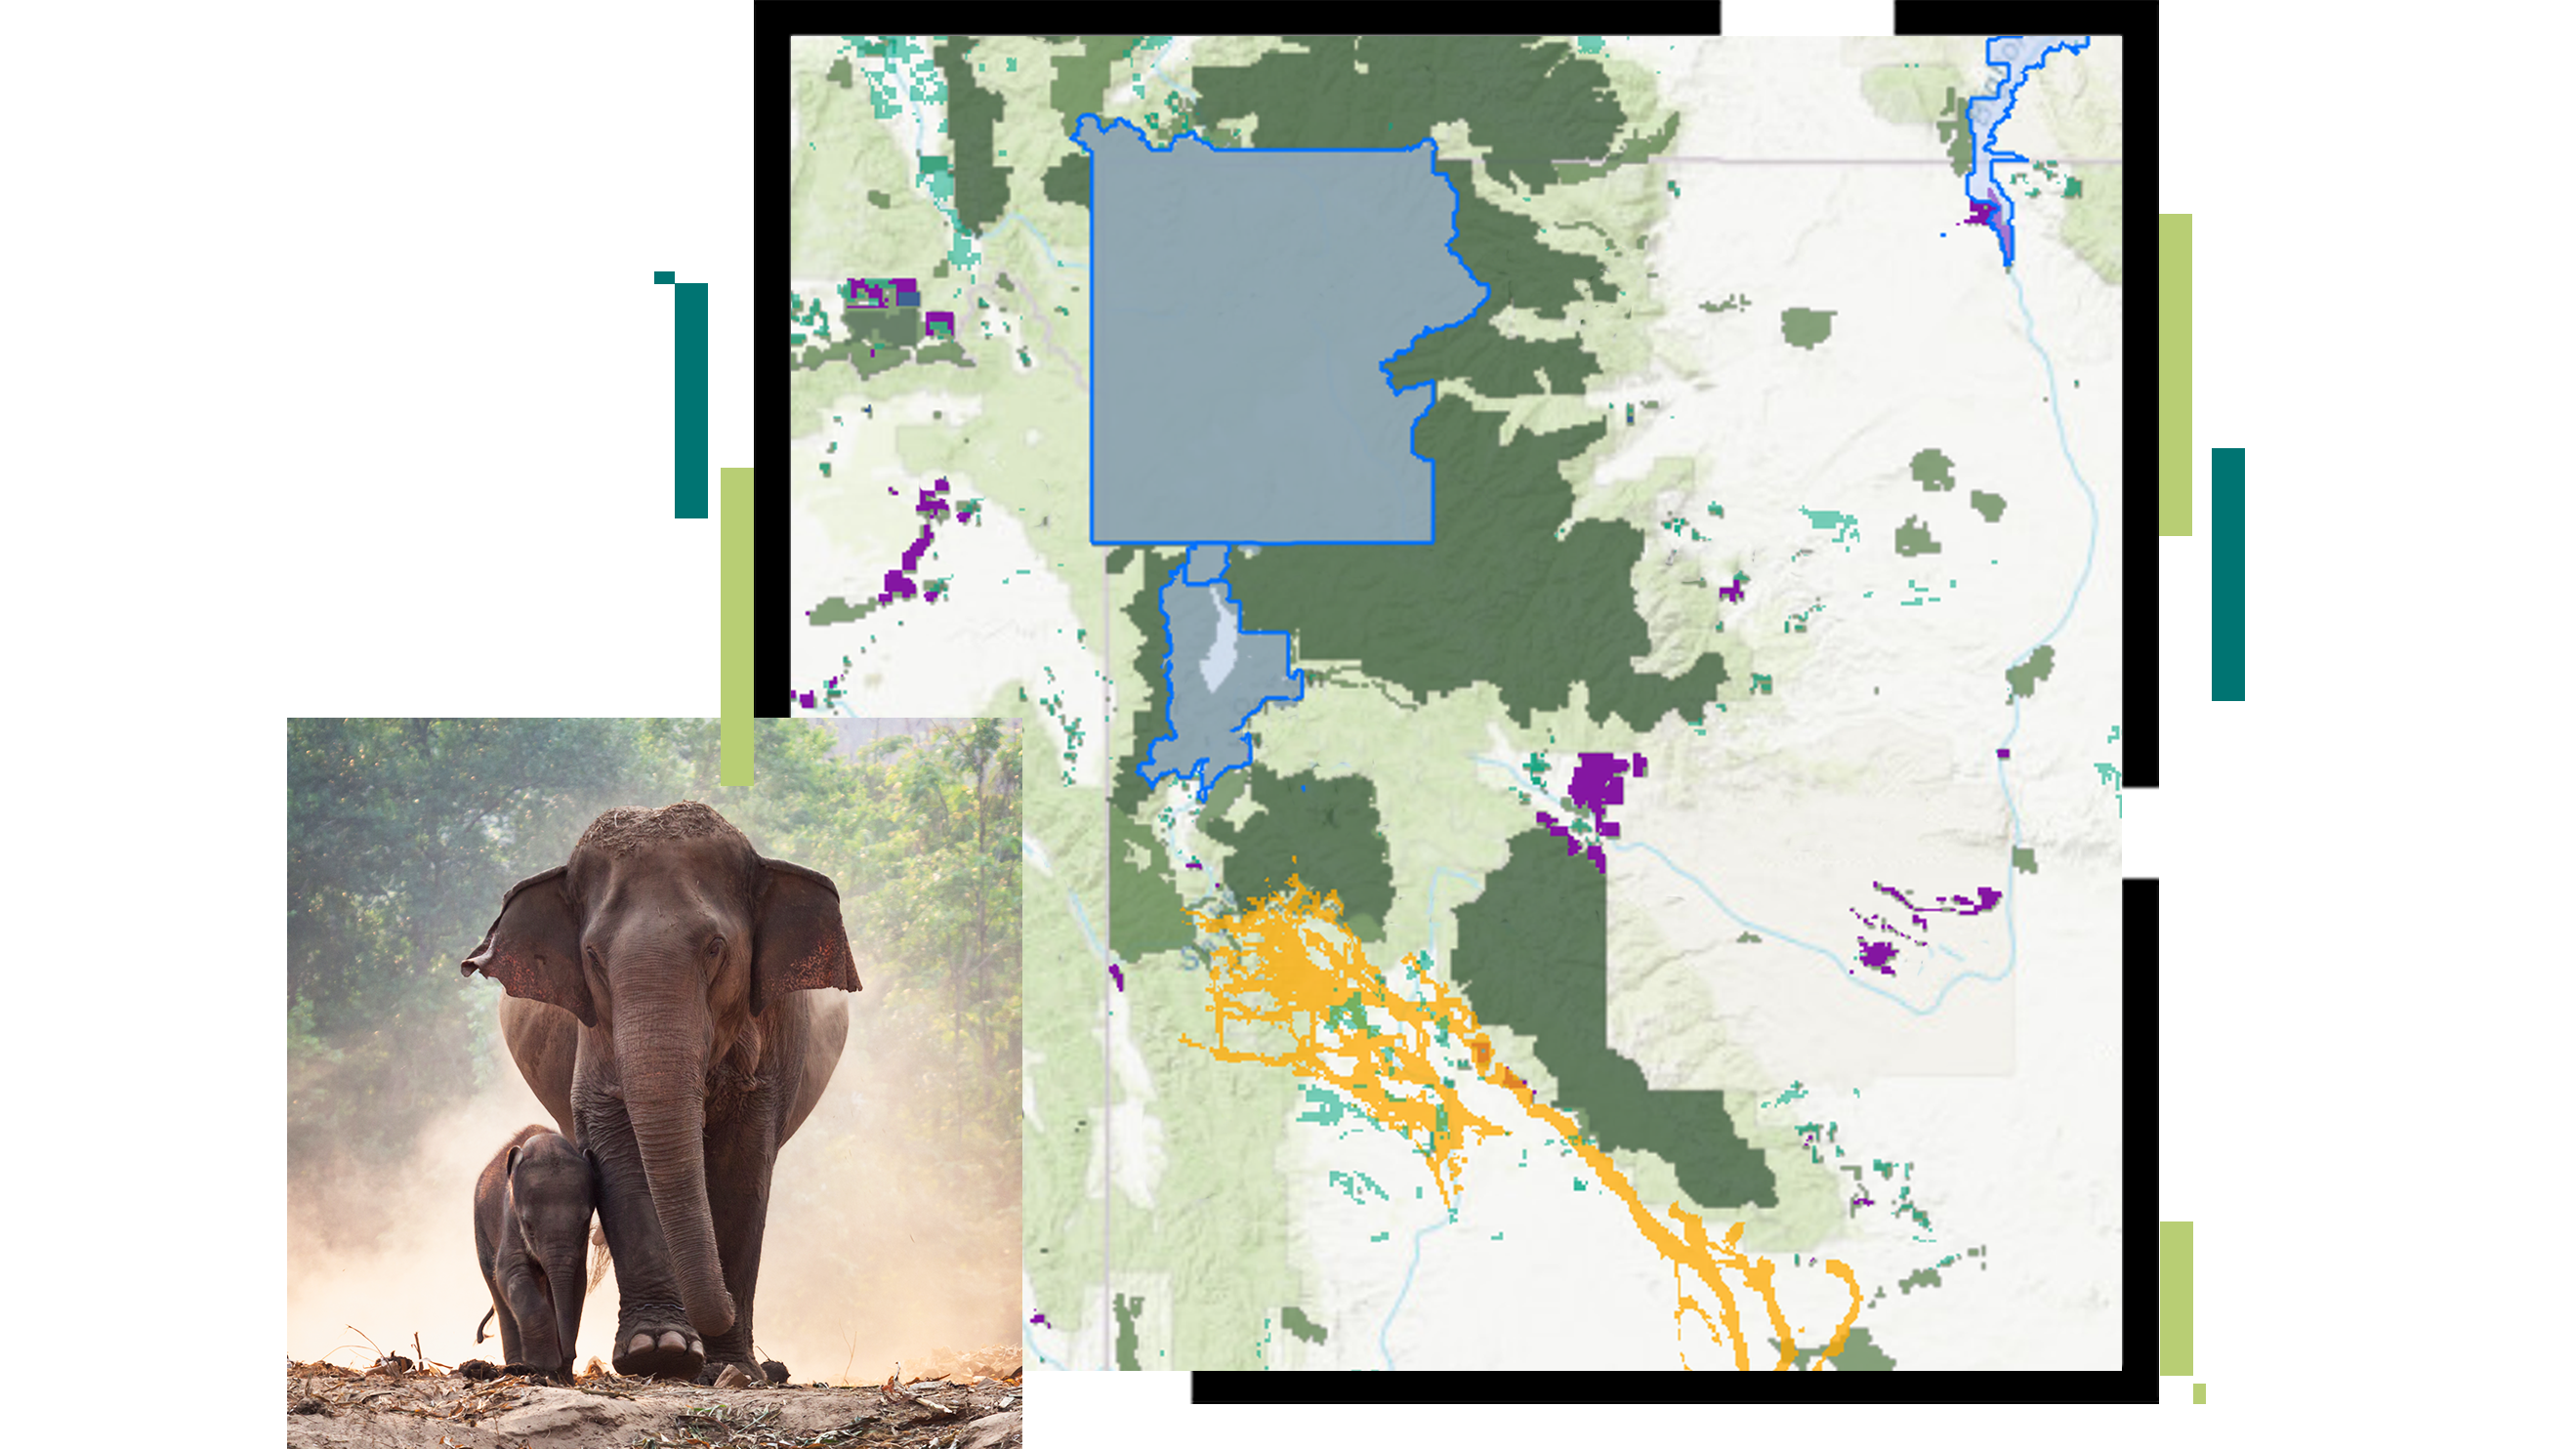 Mapa z proponowanym obszarem chronionym zaznaczonym na niebiesko z wizerunkiem słonia i jego cielęcia